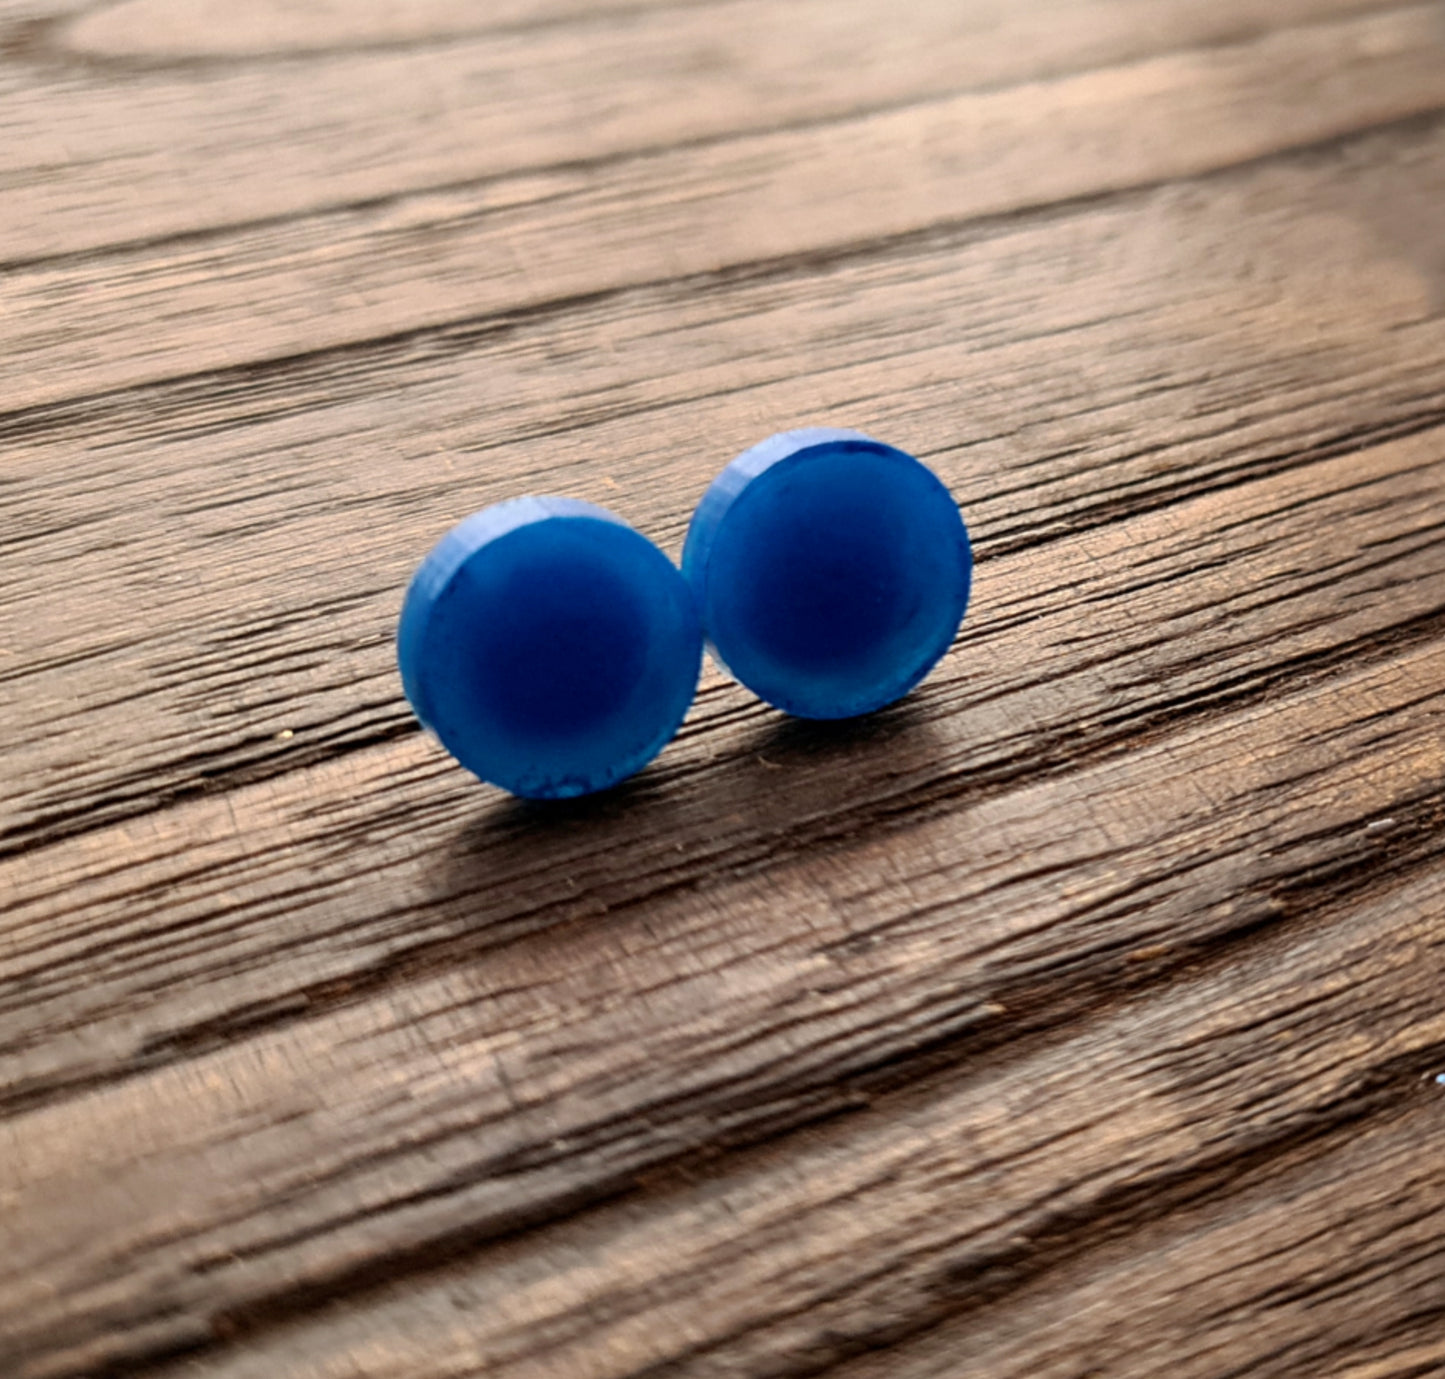 Circle Dot Resin Stud Earrings, Blue Earrings. Stainless Steel Stud Earrings